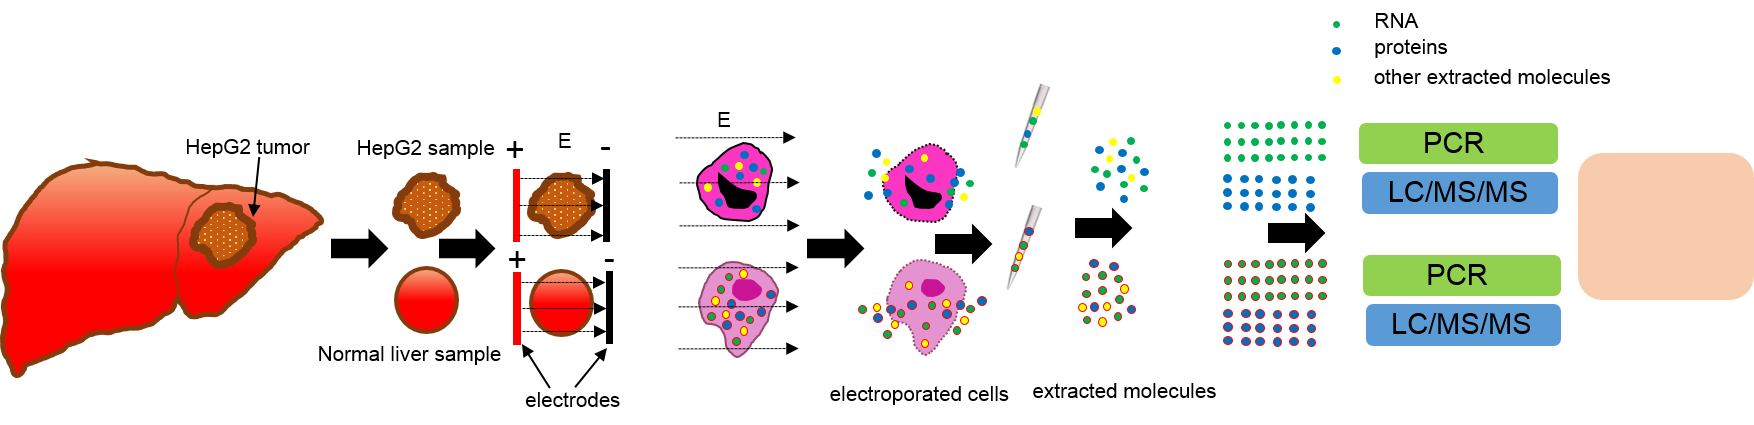 מיצוי מולקולות עם פולסים חשמלים מאפשר זיהוי רקמות סרטניות לעומת רקמות רגילות. צילום: פרופ' אלכסנדר גולברג